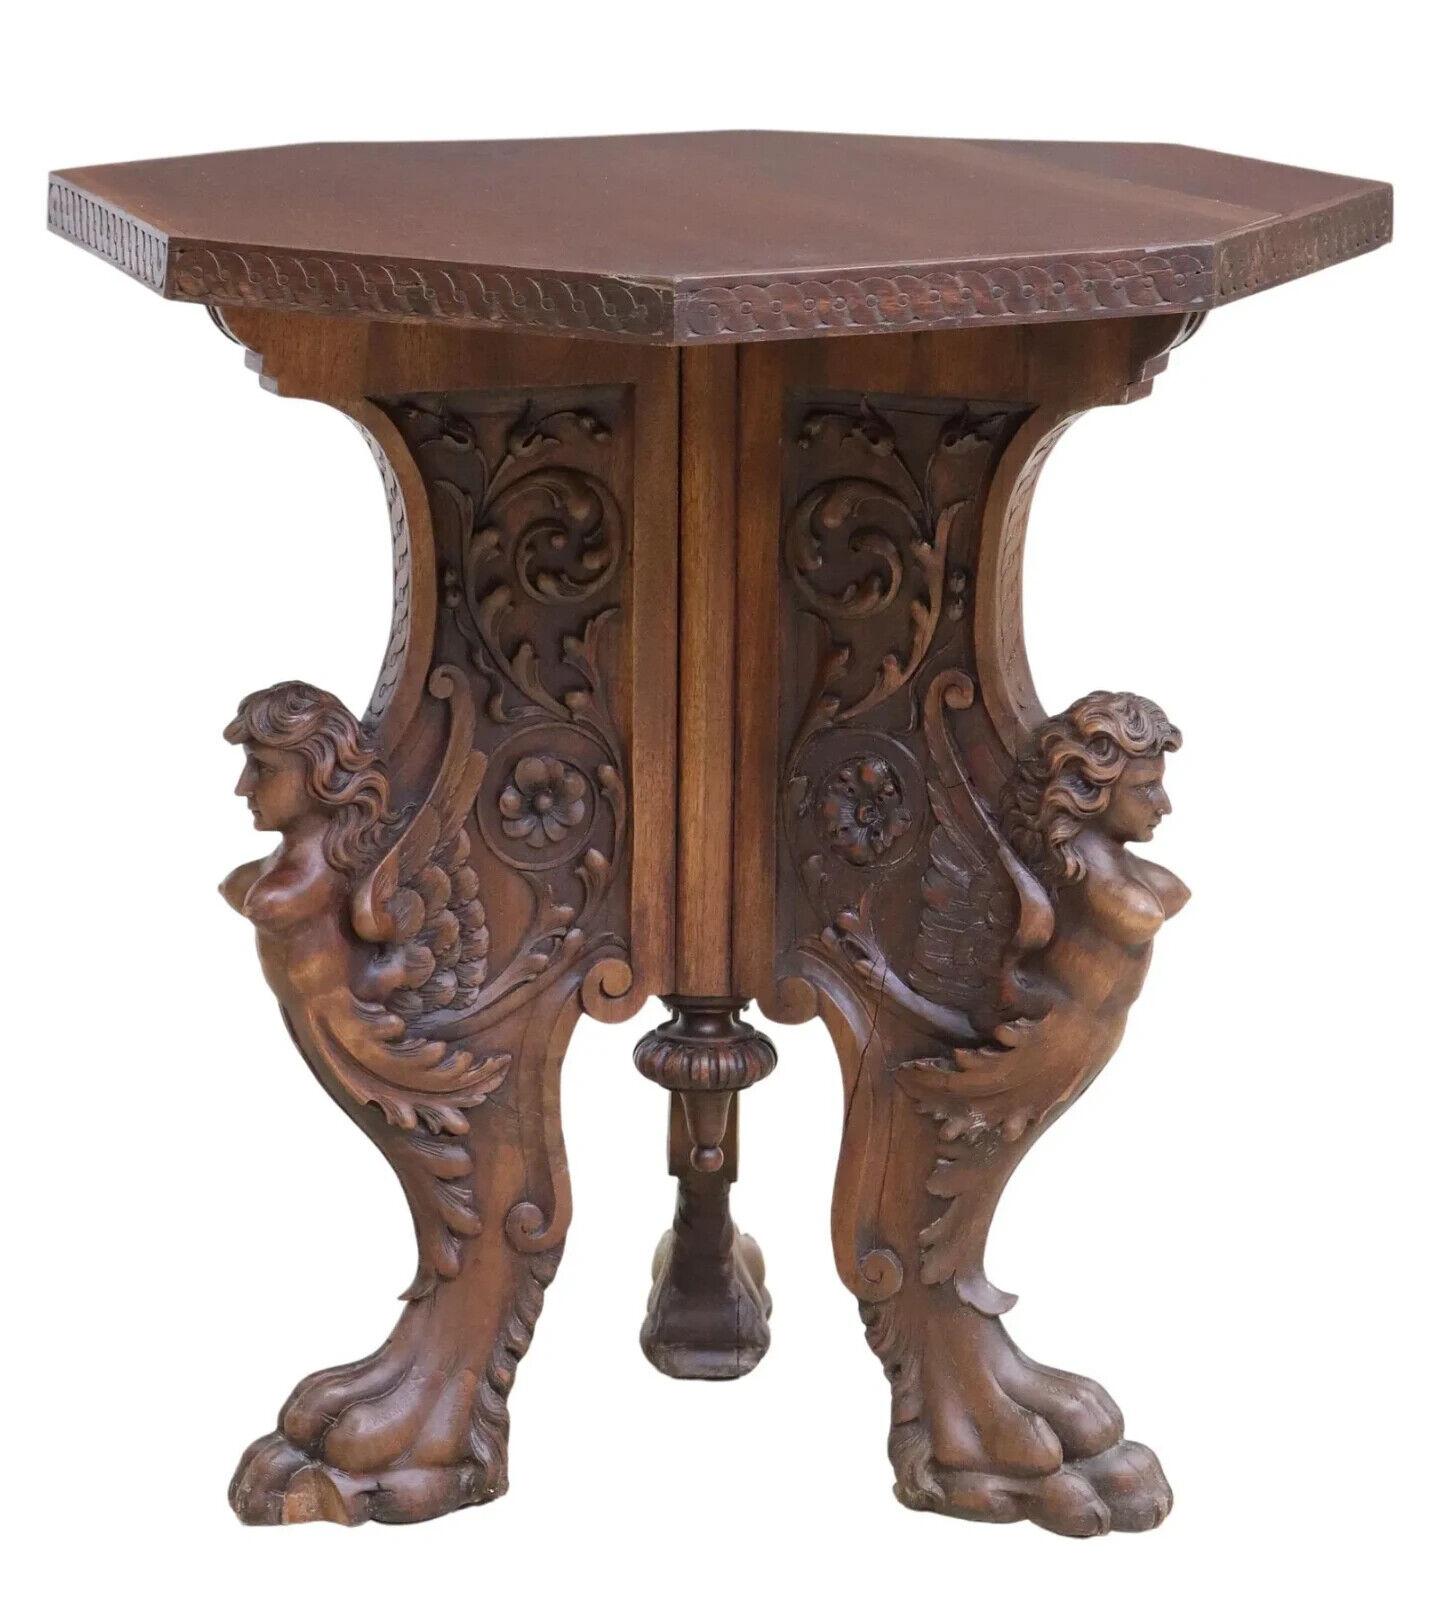 
Wunderschöner Tisch, Mitte, italienische Renaissance, geschnitzt  Nussbaum, Dreibein, 19./20. Jahrhundert!!

Dieser antike Mitteltisch mit seinen exquisiten Schnitzereien ist eine schöne Ergänzung für jeden Raum. Mit seinen dunklen Holztönen und